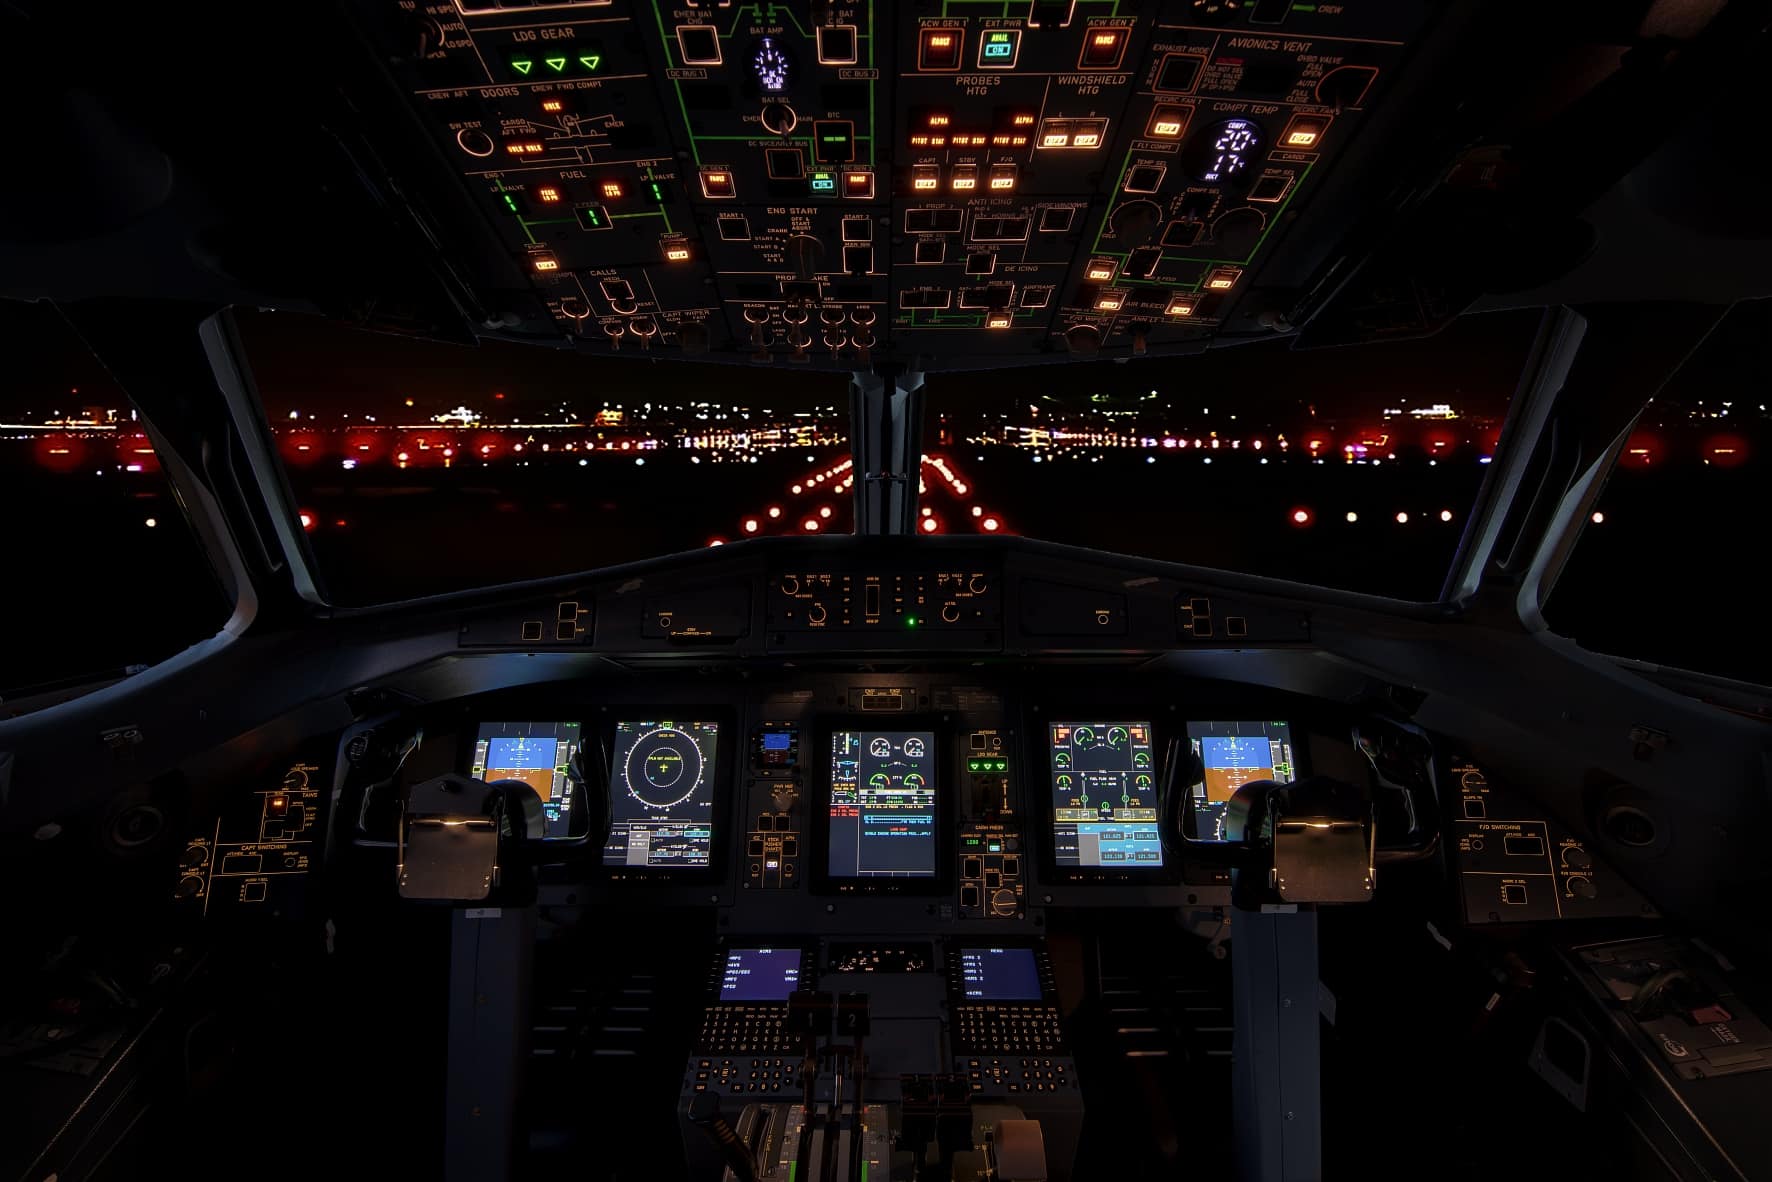 Cockpit of an ATR -600